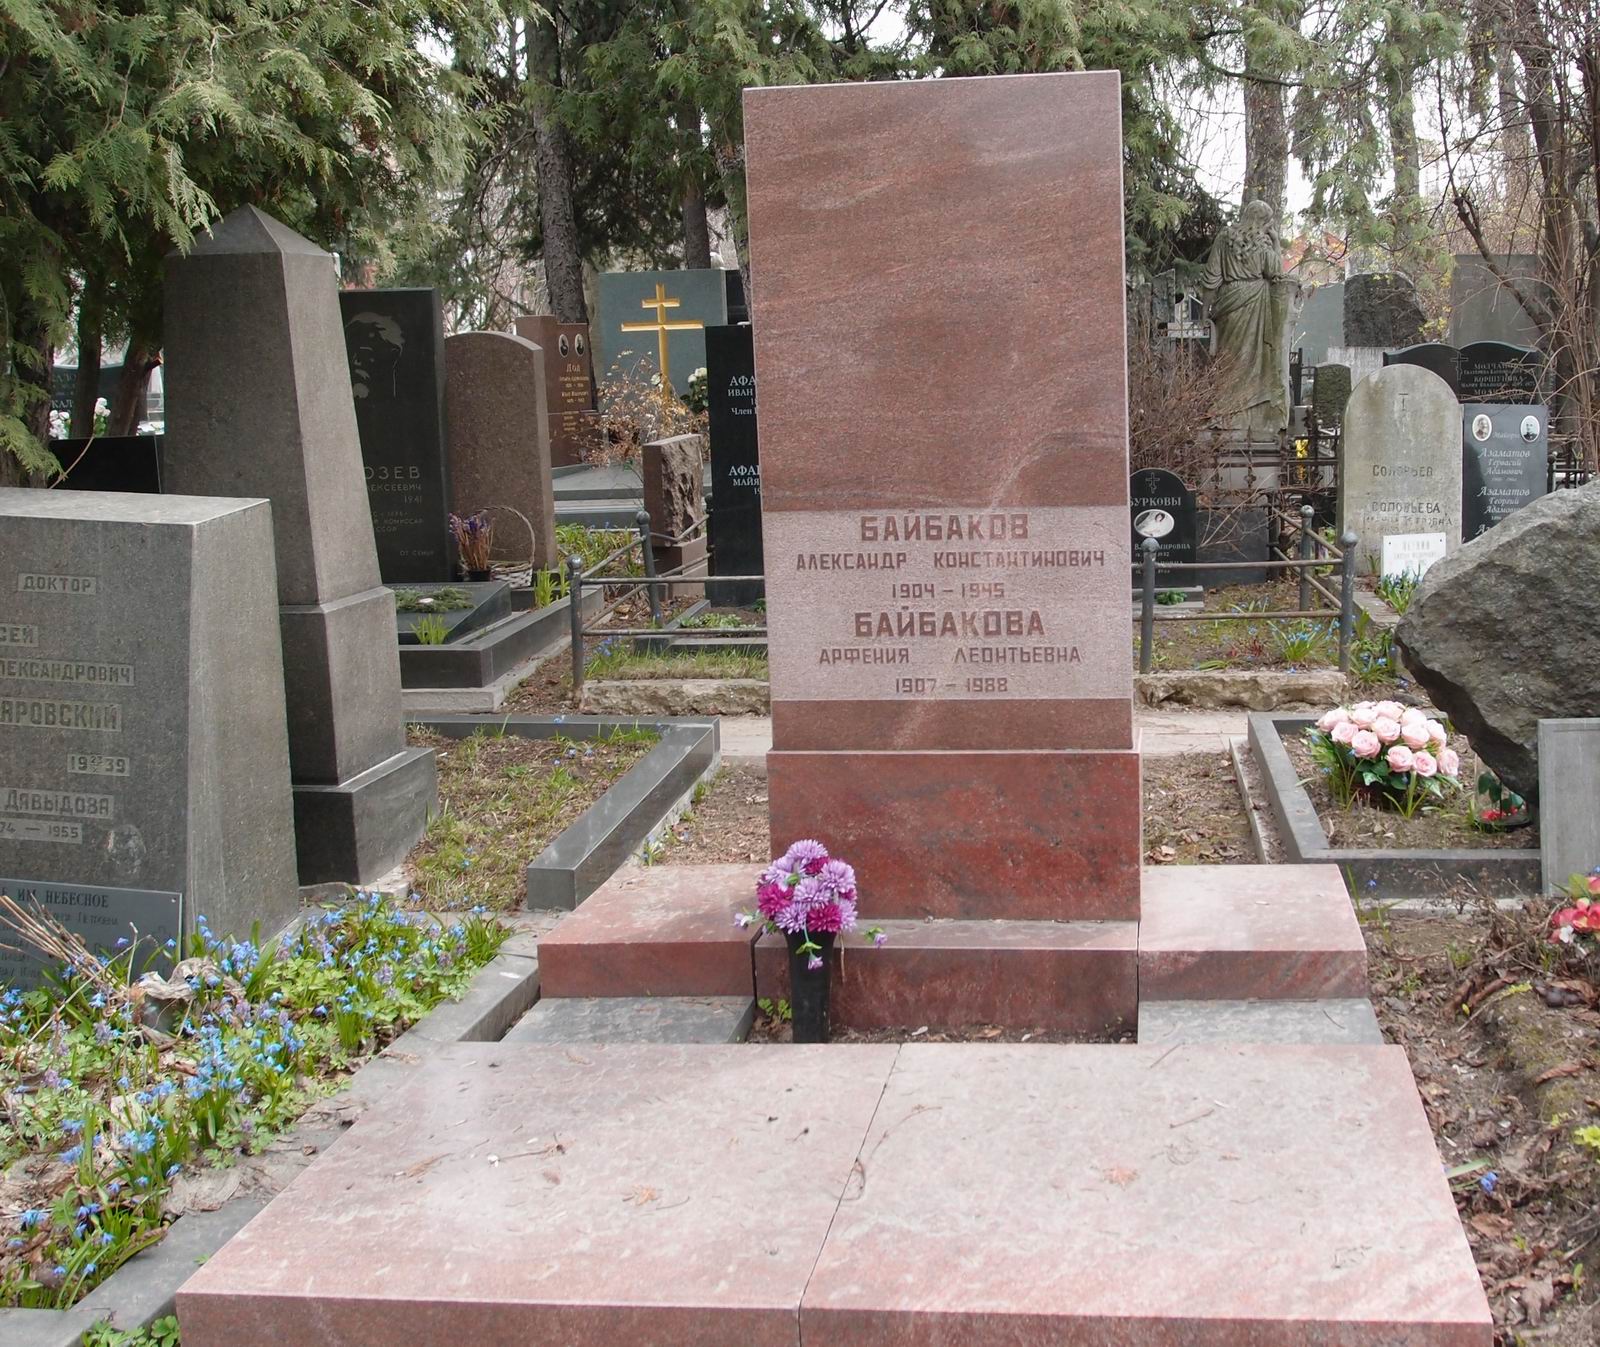 Памятник на могиле Байбакова А.К. (1904-1945), арх. А.Гераскин, на Новодевичьем кладбище (1-13-7).